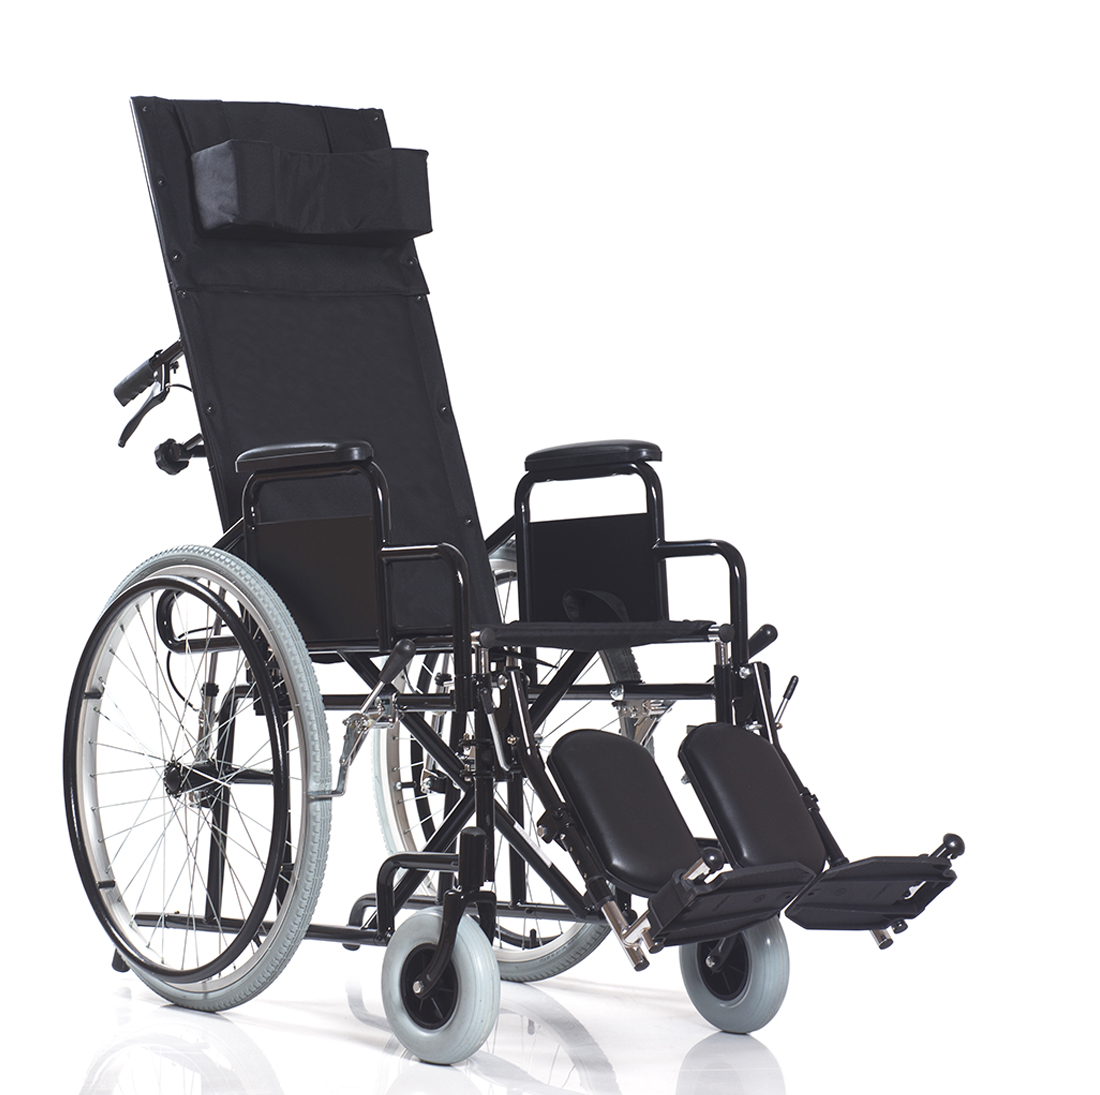 Кресло коляска для инвалидов узкая